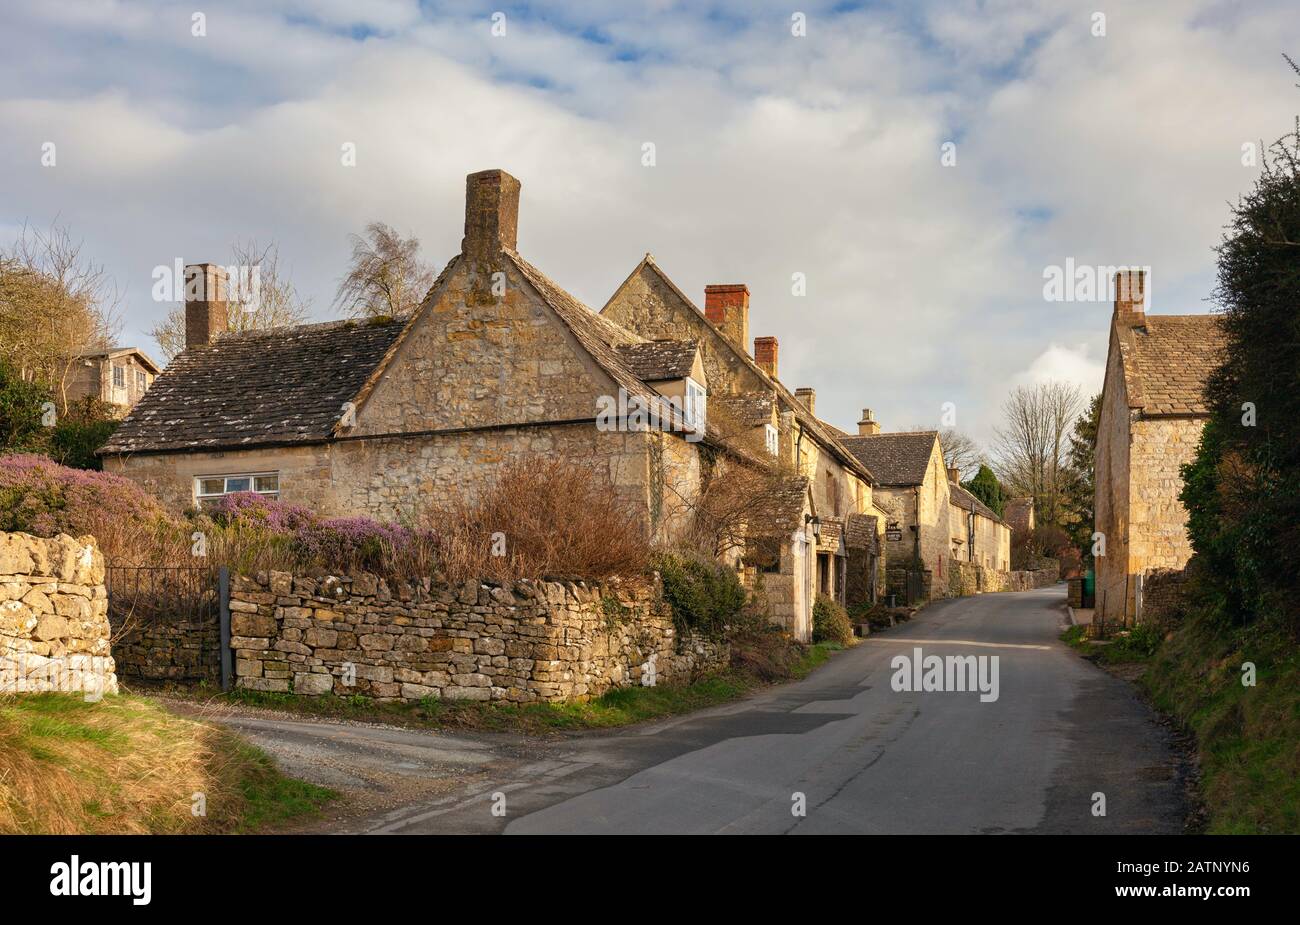 Village de Brockhampton près de Winchcombe, Cotswolds, Gloucestershire, Angleterre Banque D'Images